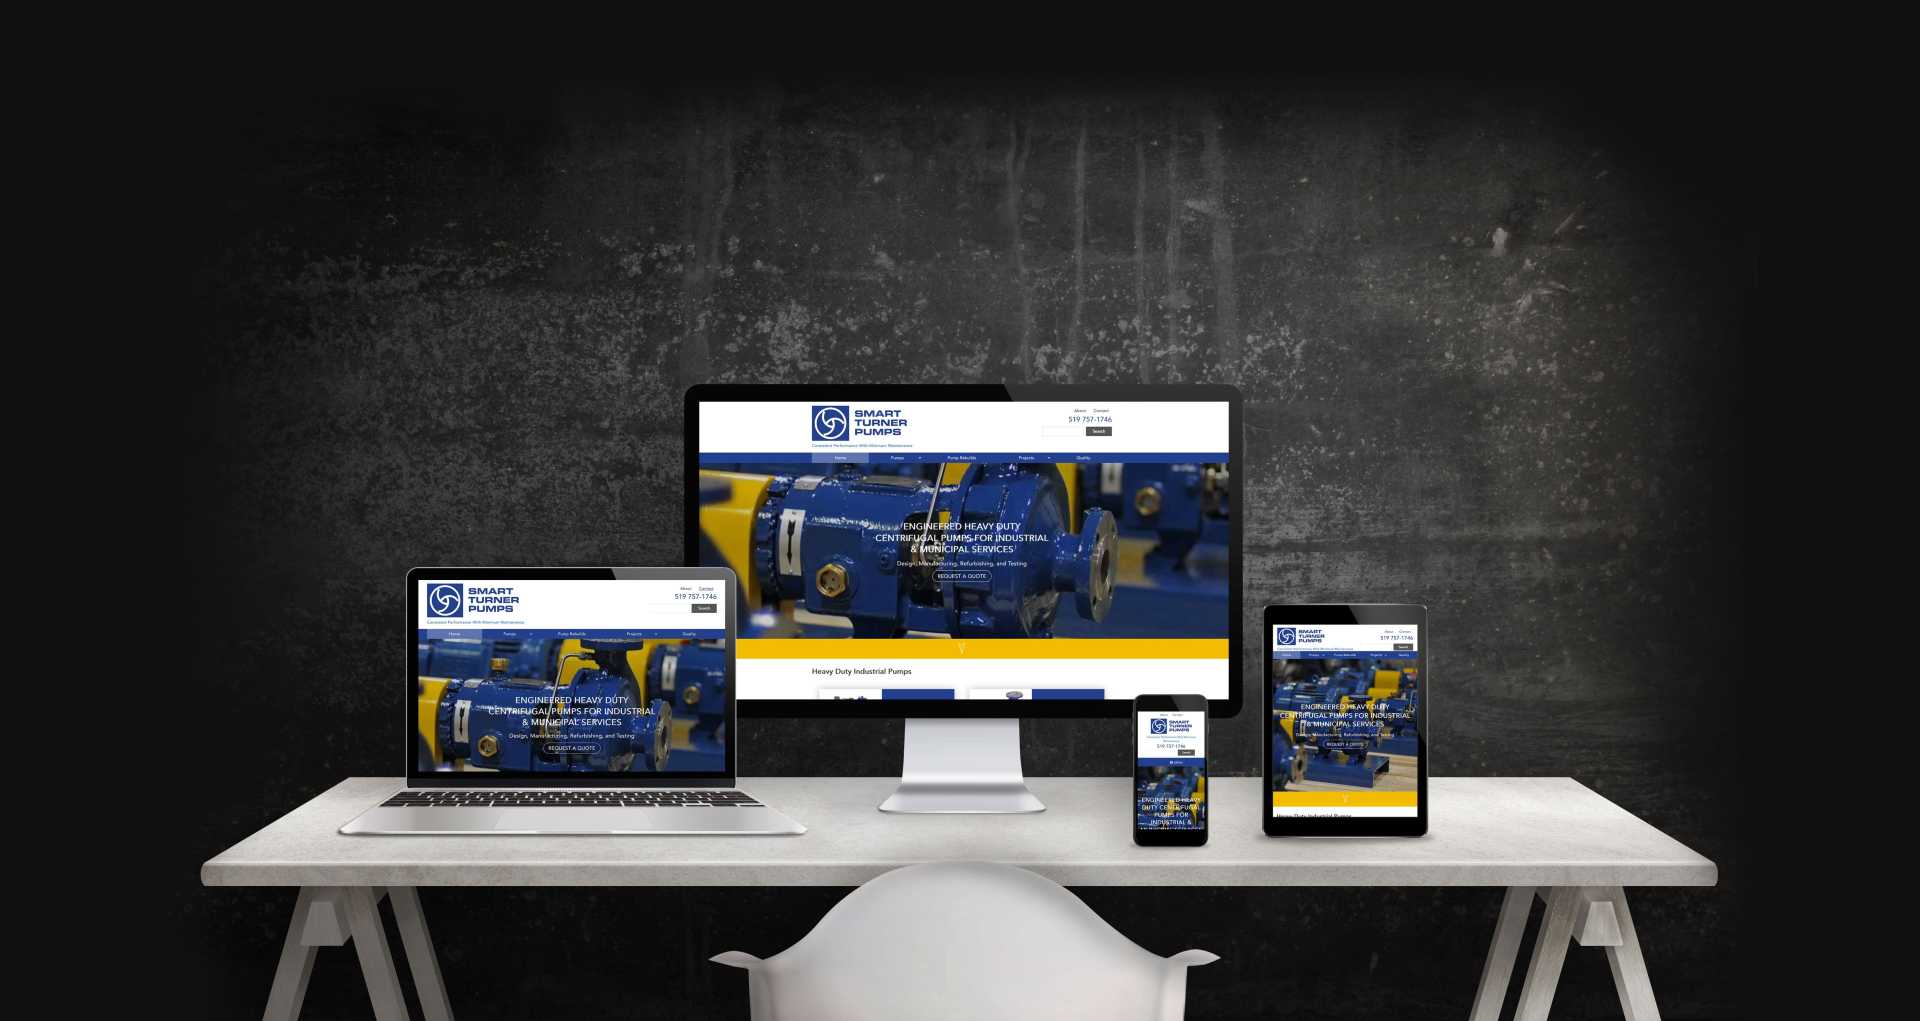 Mockup of mobile and desktop displays of the Smart Turner Pumps website.